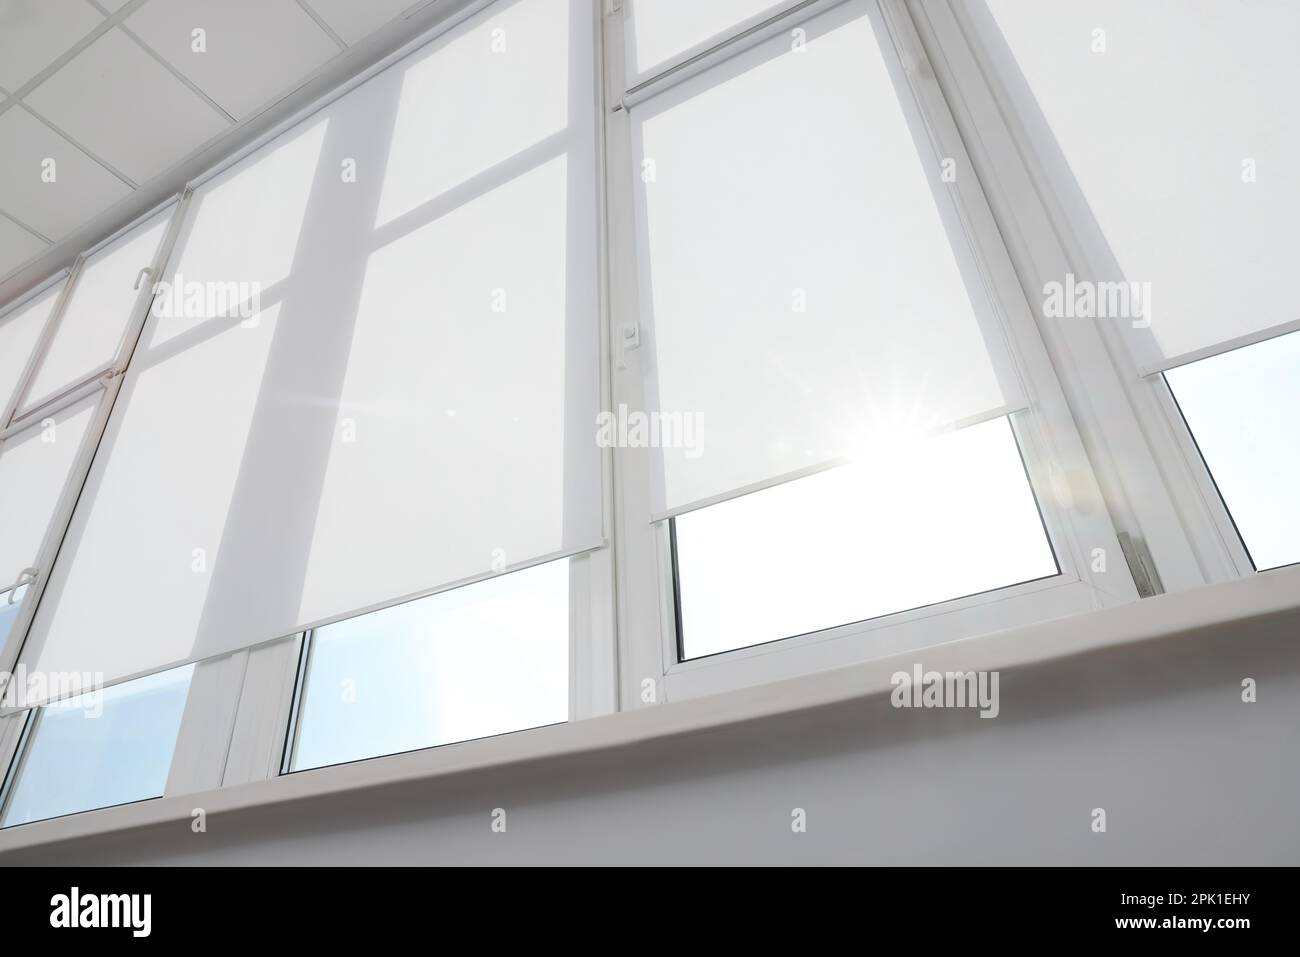 Gran ventana con persianas enrollables blancas en el interior